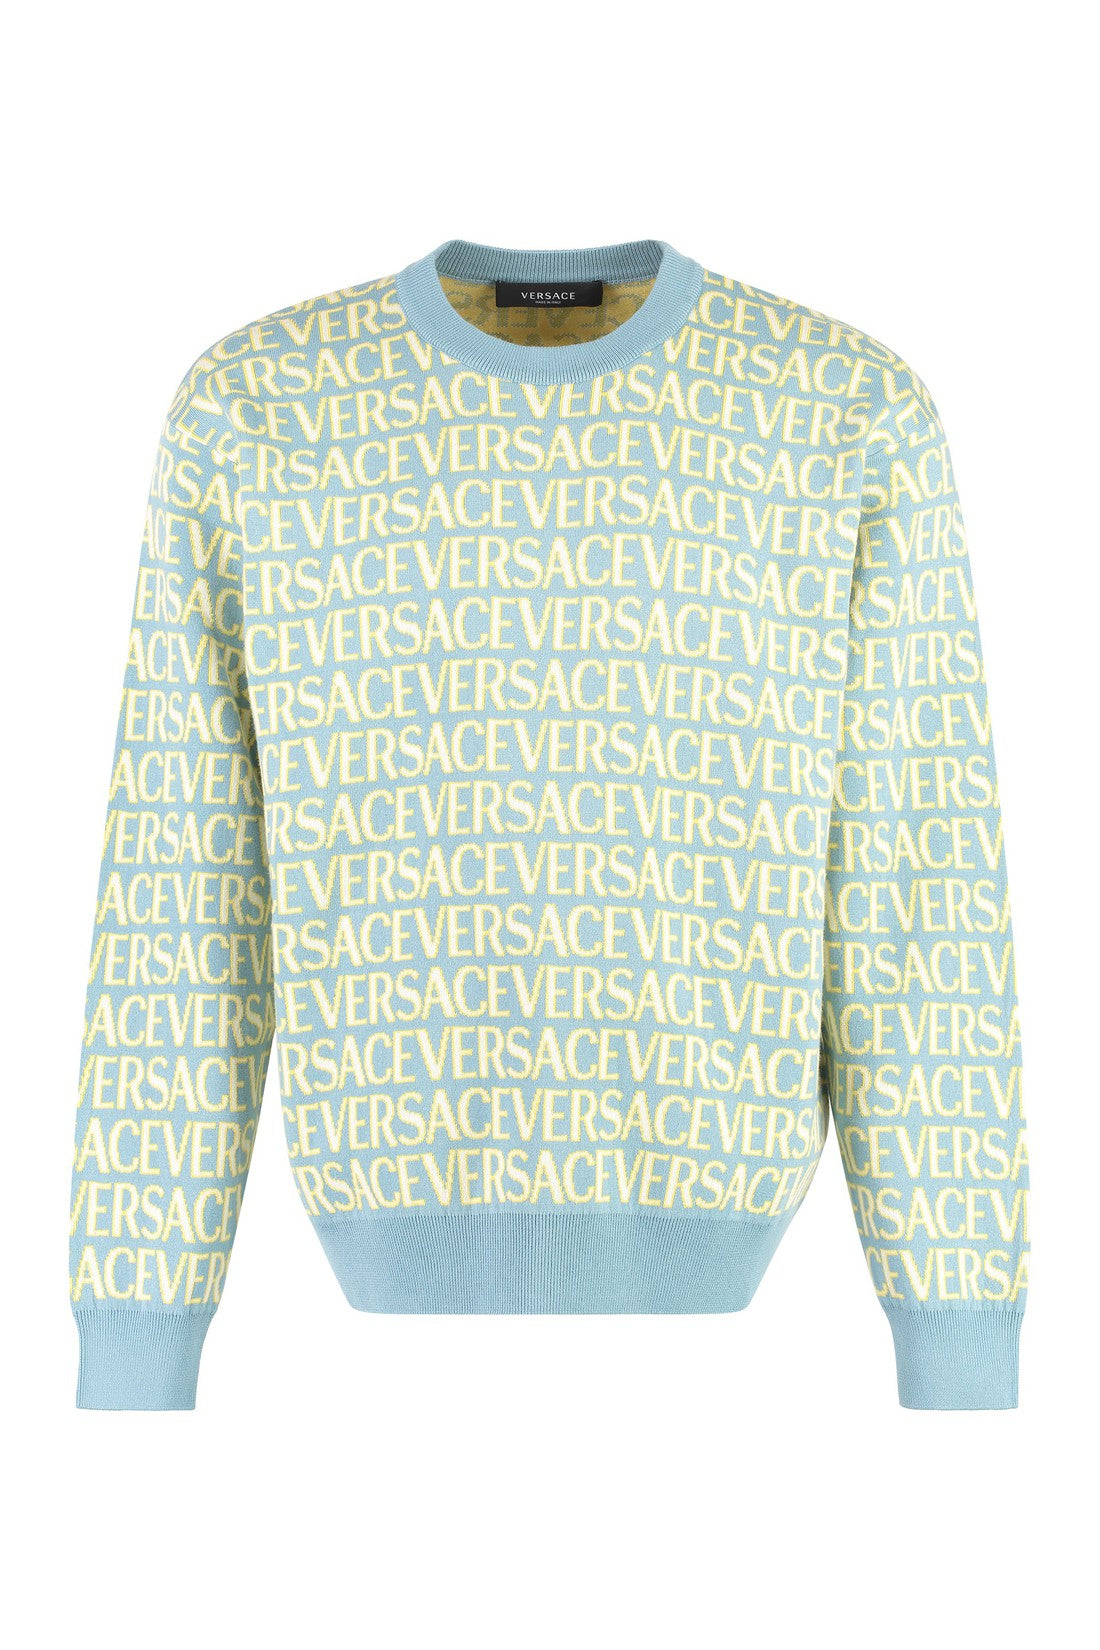 Versace-OUTLET-SALE-Cotton crew-neck sweater-ARCHIVIST